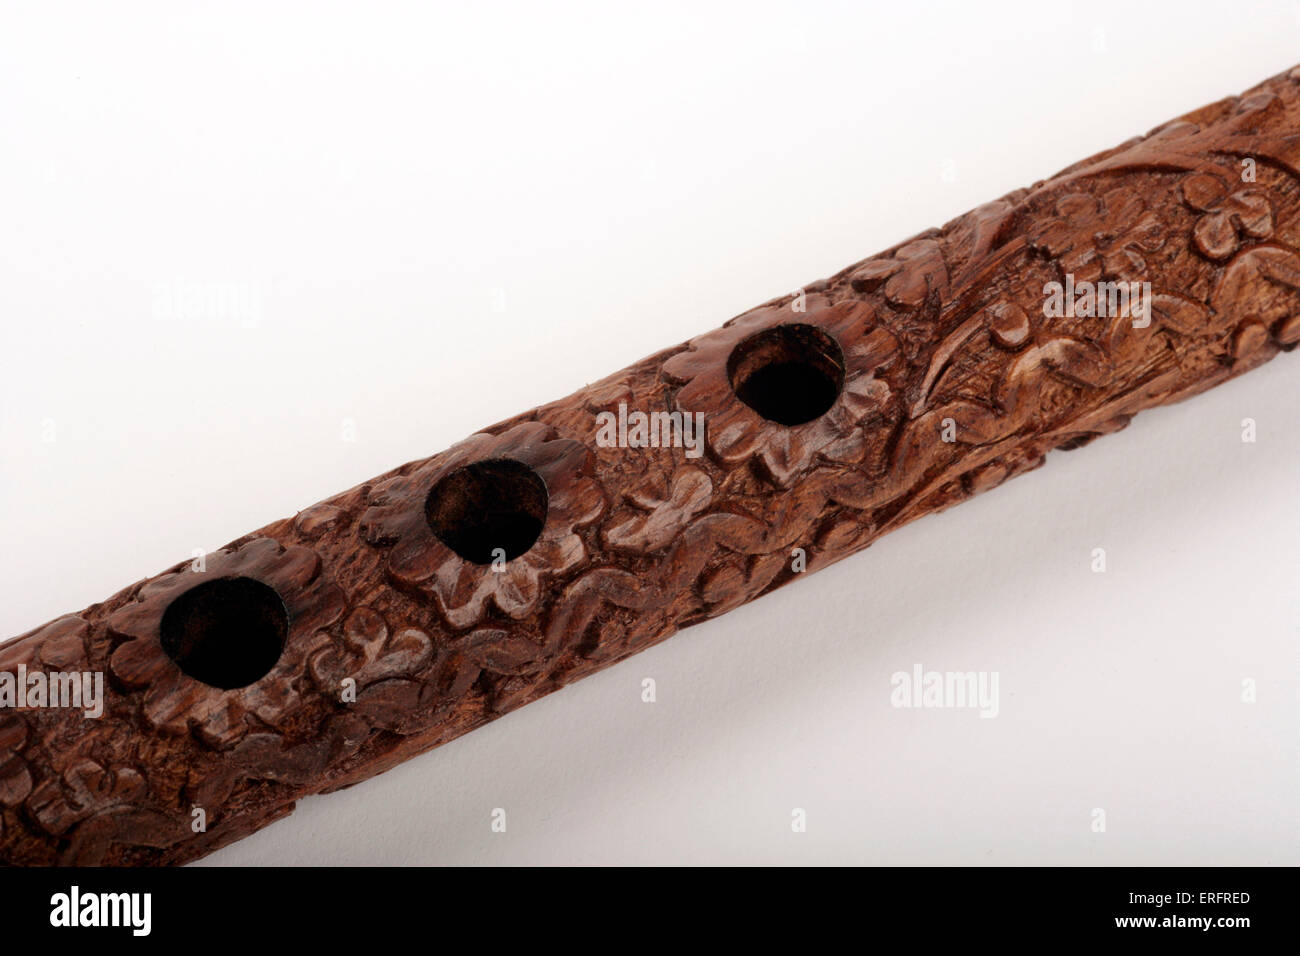 Legno intagliato flauto arabo - realizzato in legno di palissandro. Dettaglio dei fori per le dita Foto Stock